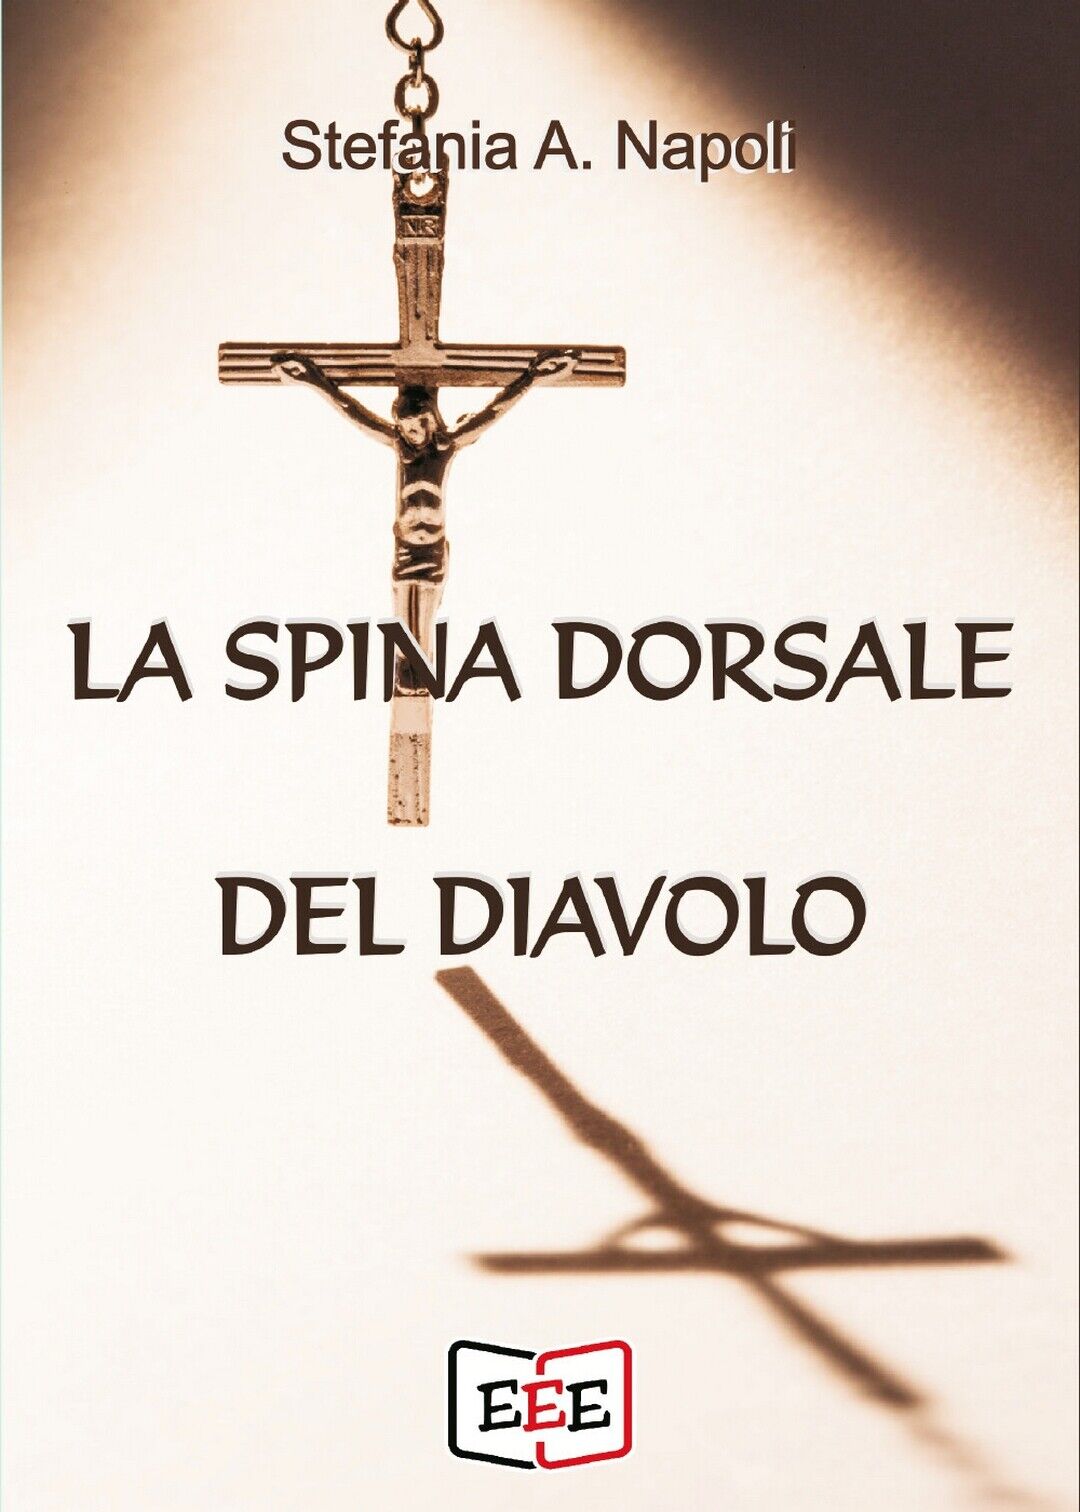 La spina dorsale del diavolo  di Stefania A. Napoli,  2020,  Eee - Edizioni